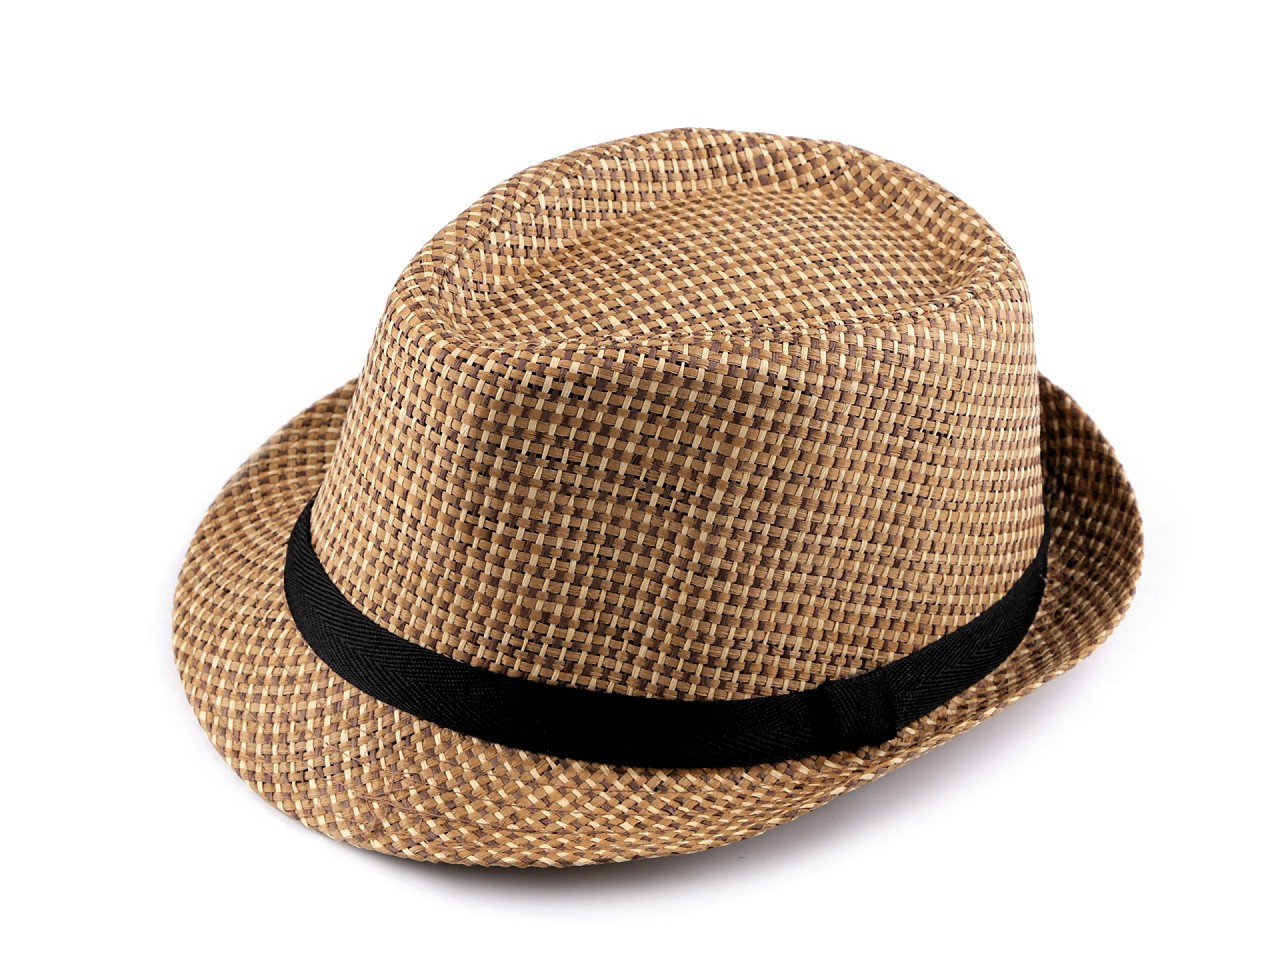 Letní klobouk / slamák unisex, barva 7 (vel. 59 přírodní stř.